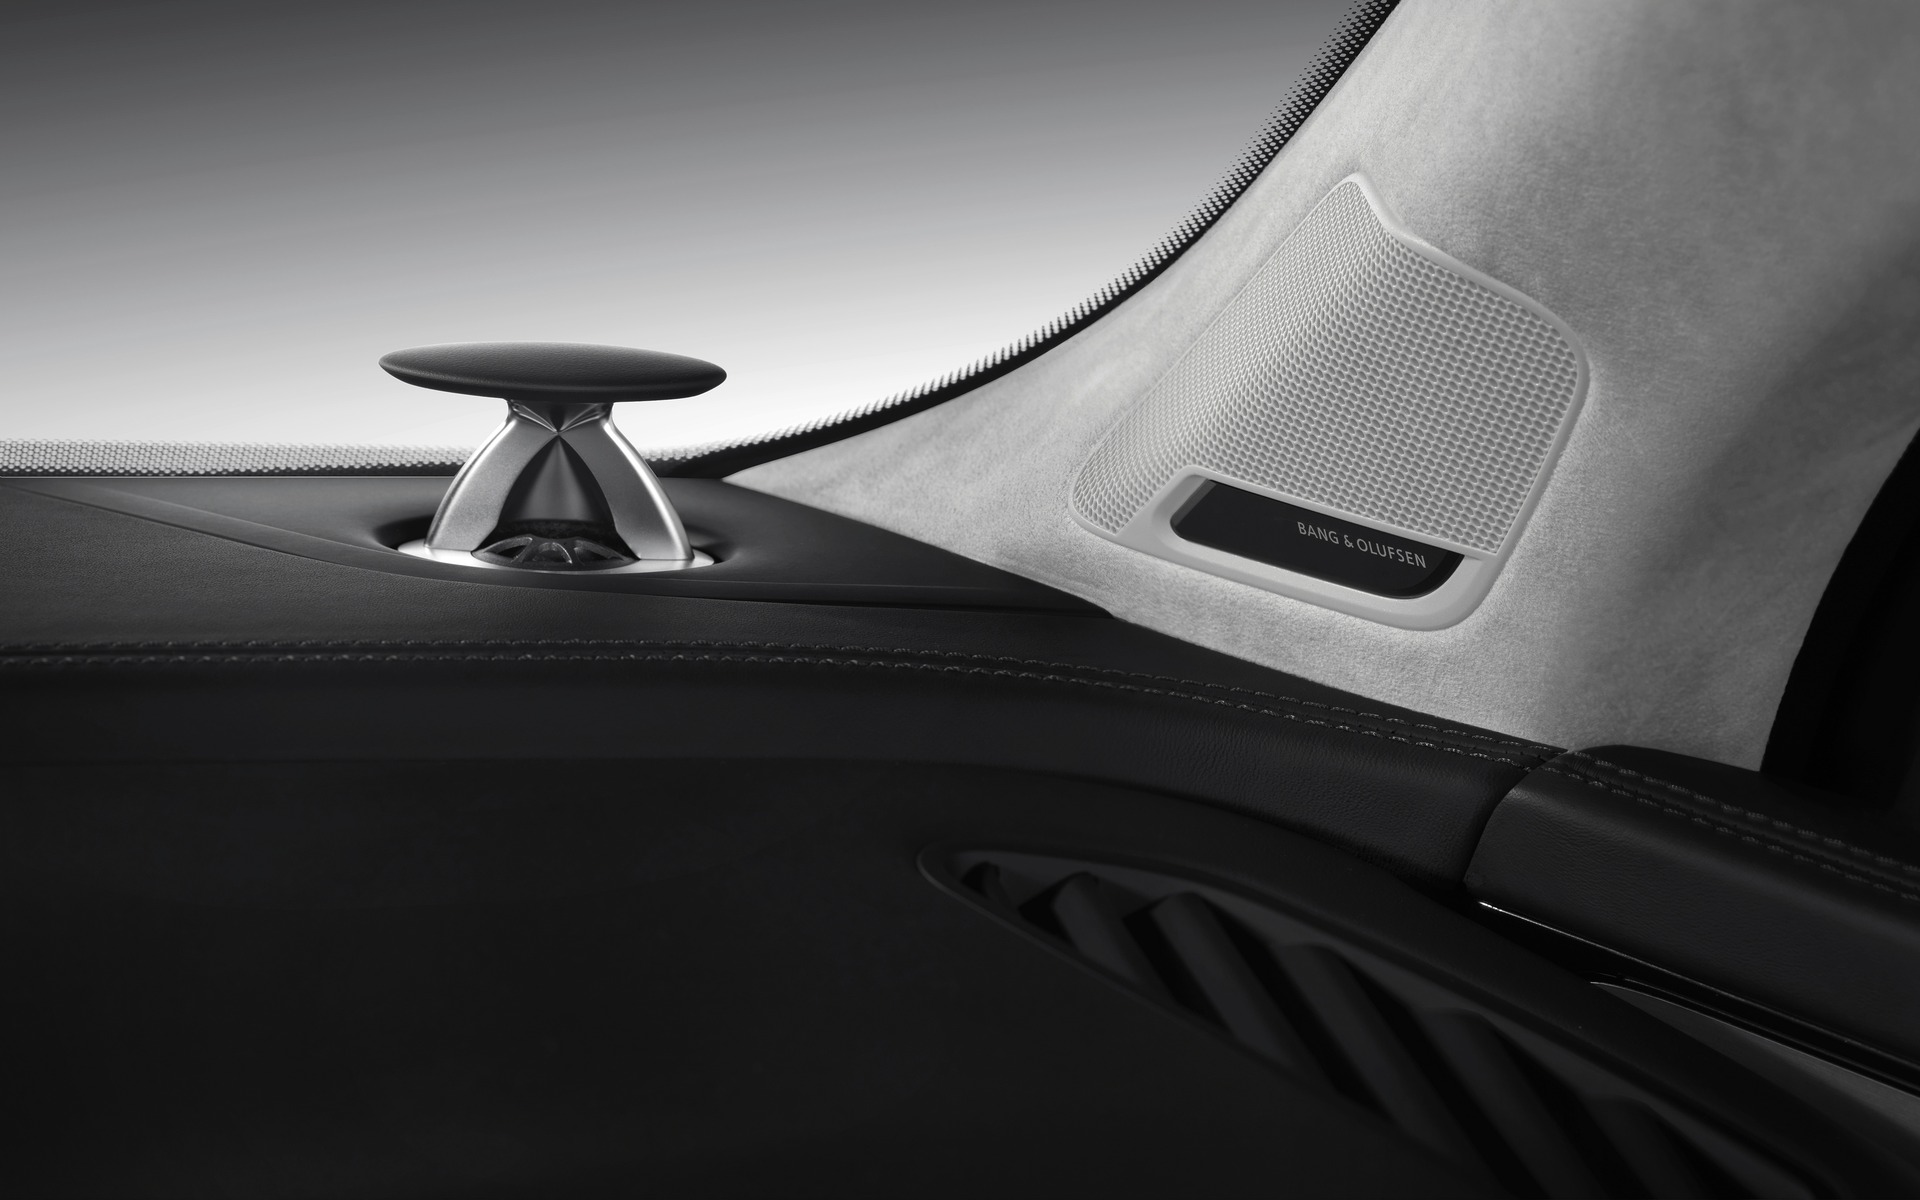 Le Audi Q7 dispose d'un système de sonorisation Bang & Olufsen